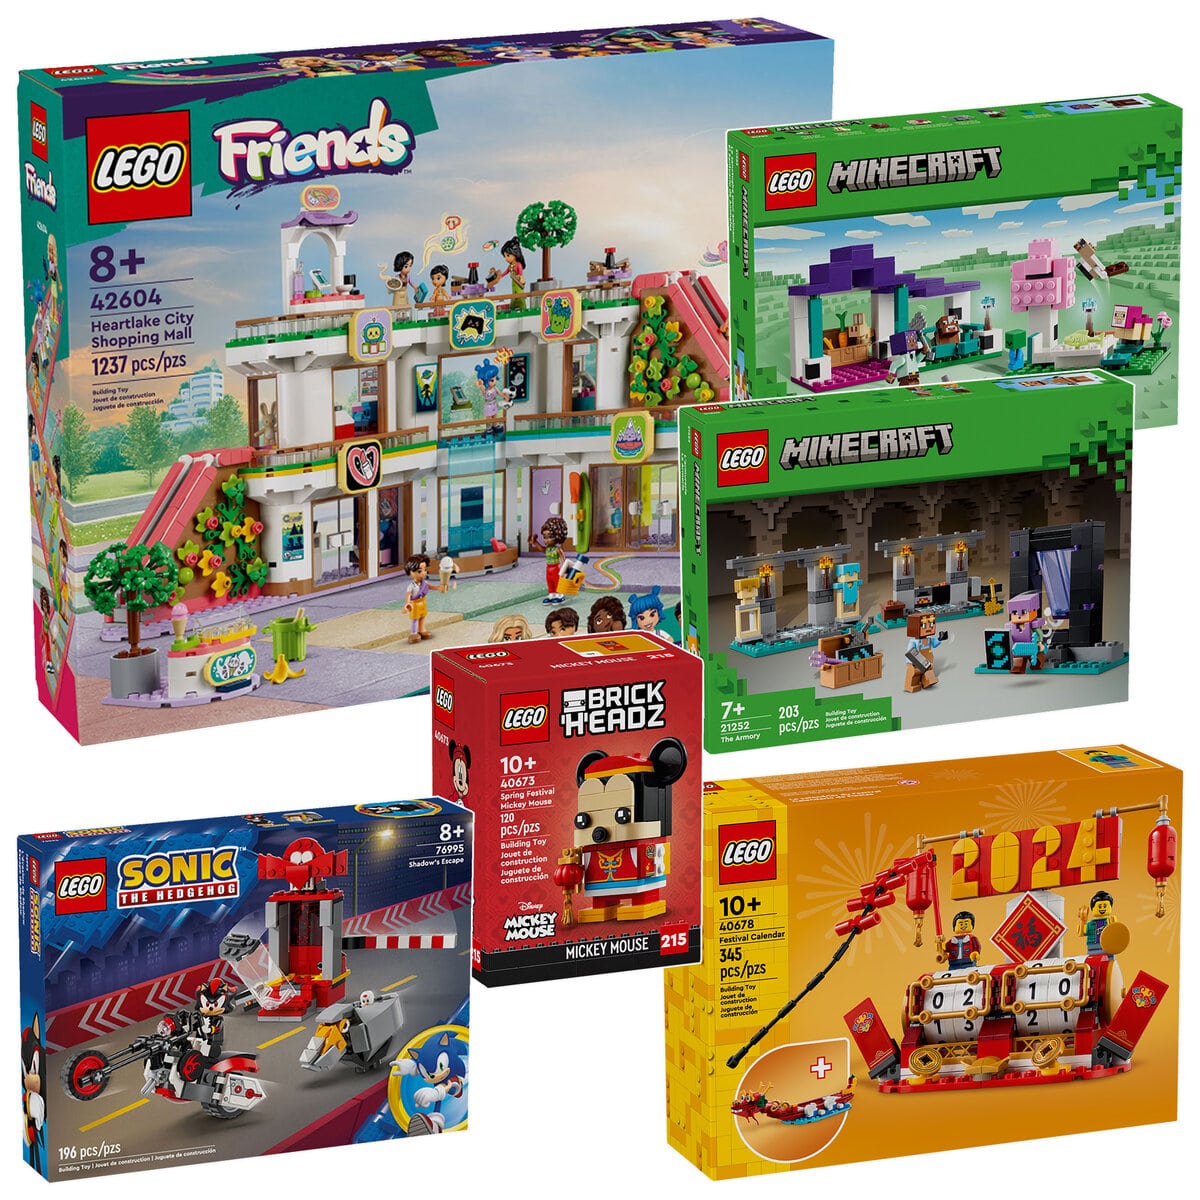 Vous pourrez bientôt acheter des Lego Friends